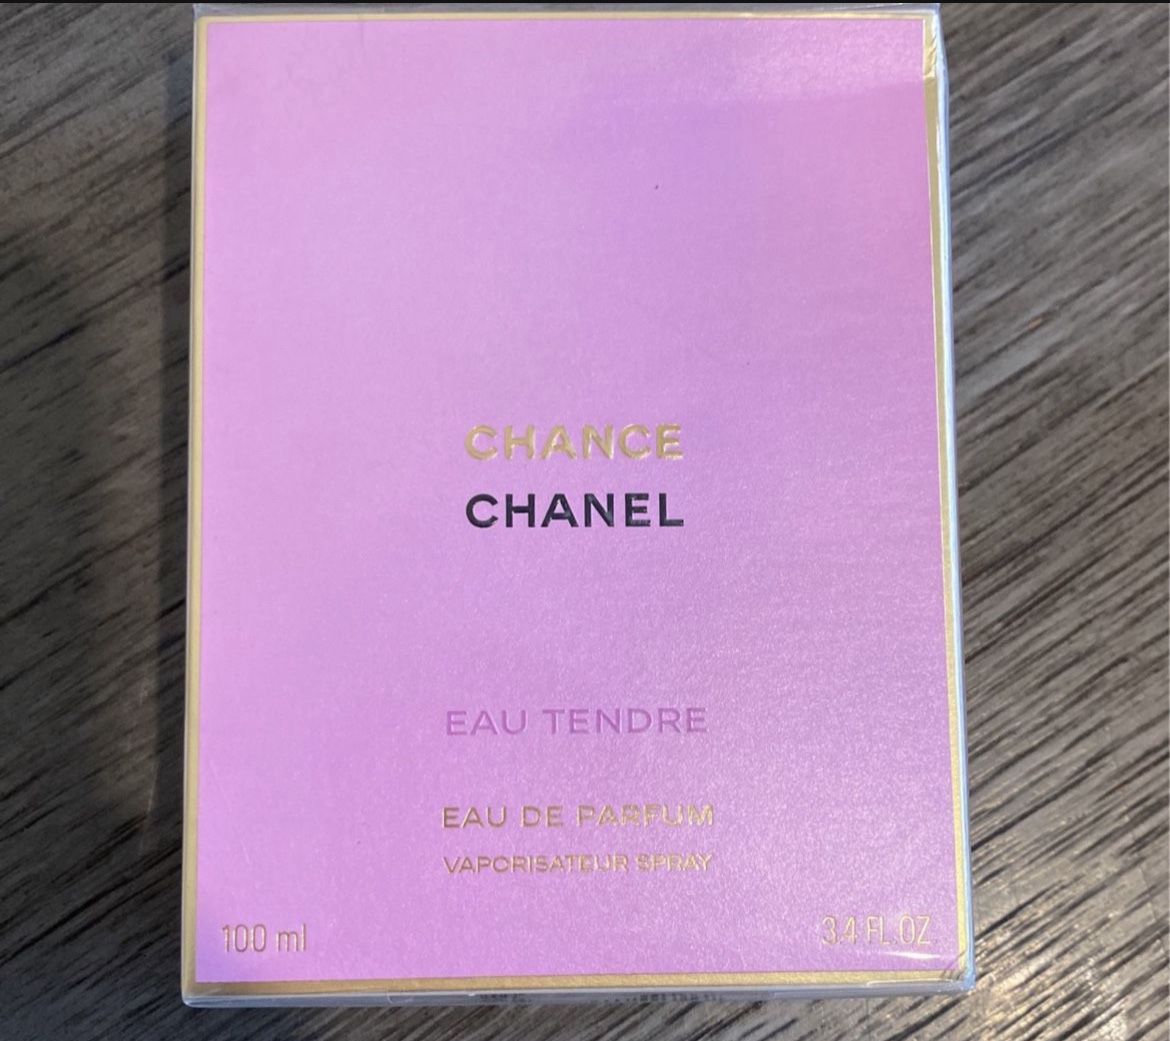 CHANEL Chance Eau Tendre Eau De Parfum 3.4 Oz. About 3/4 Full. for Sale in  Port Orchard, WA - OfferUp